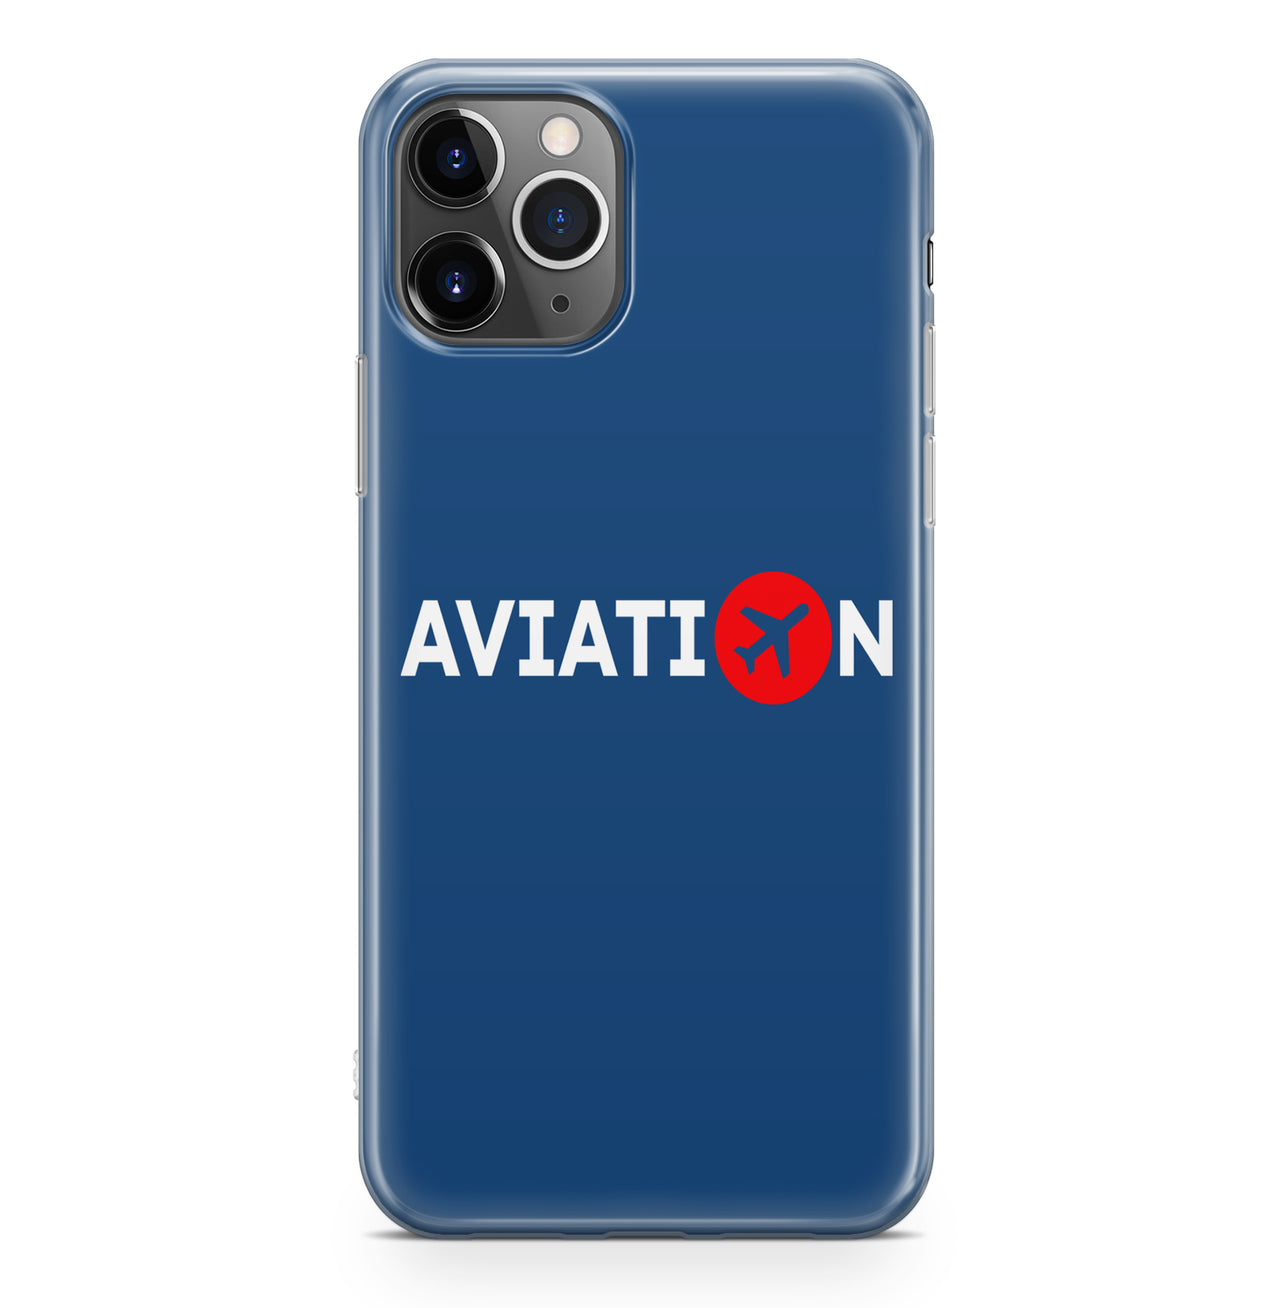 Aviation Designed iPhone Cases